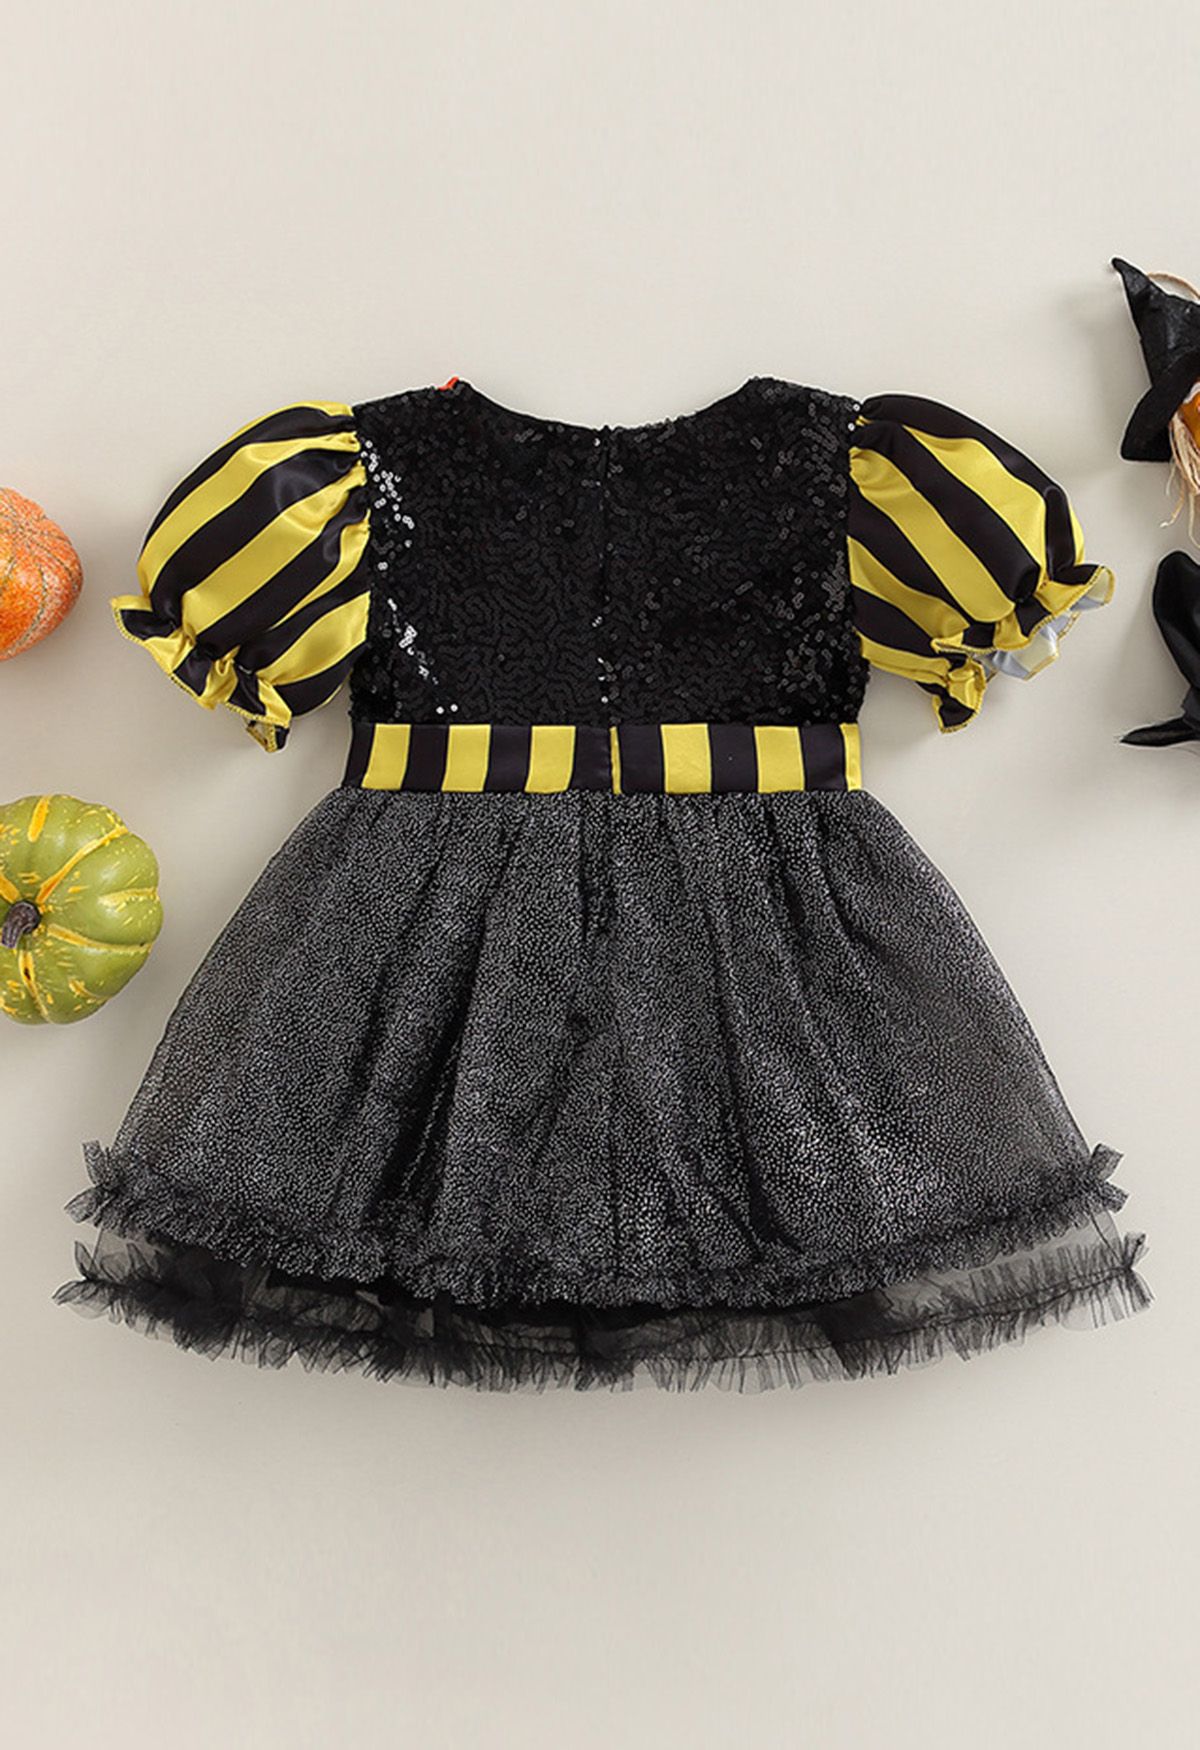 Kids' Pumpkin Patch Striped Halloween Costume Dress